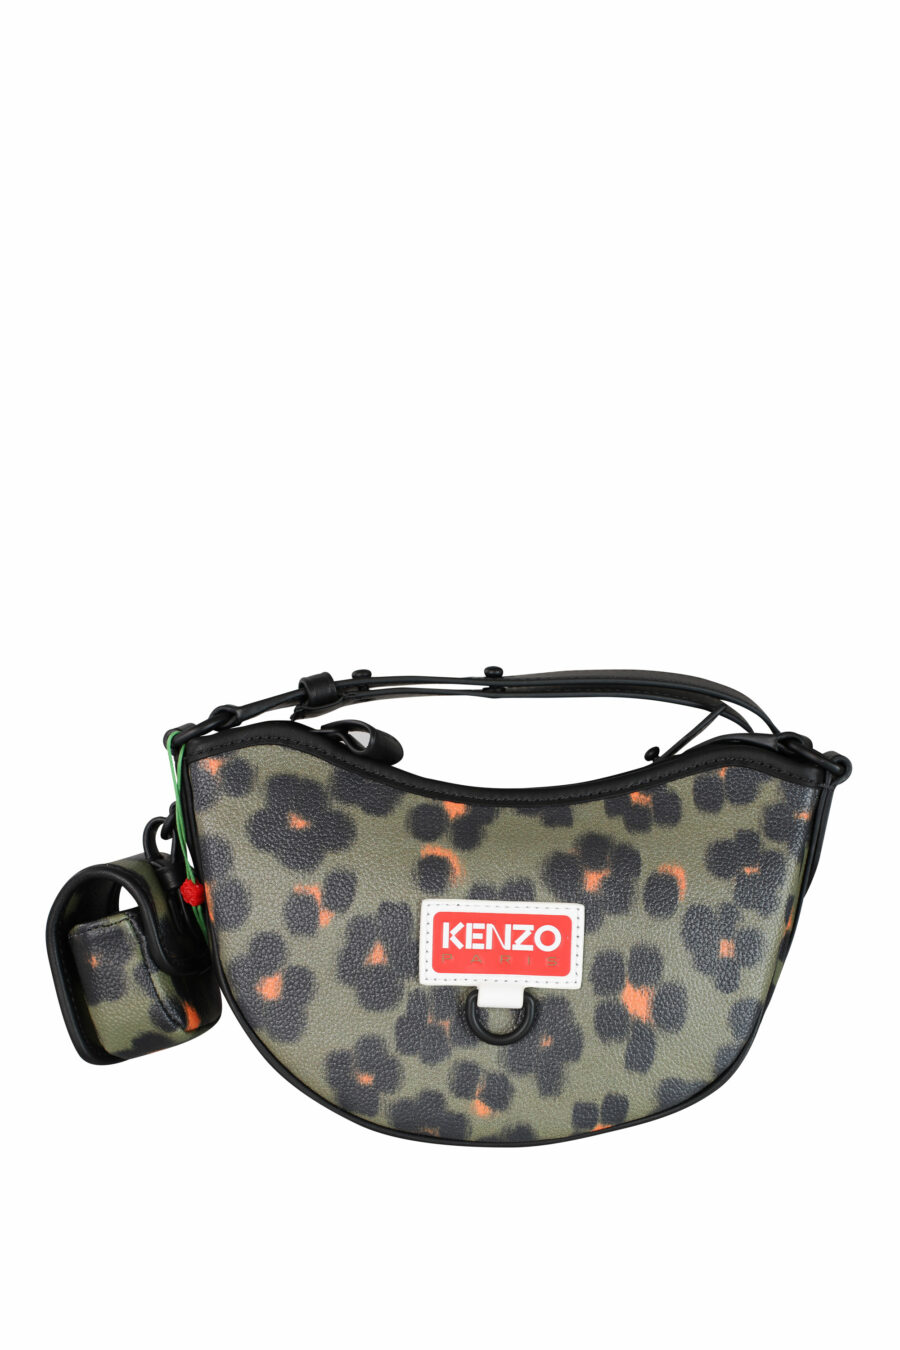 Green and orange leopard print shoulder bag - IMG 3545